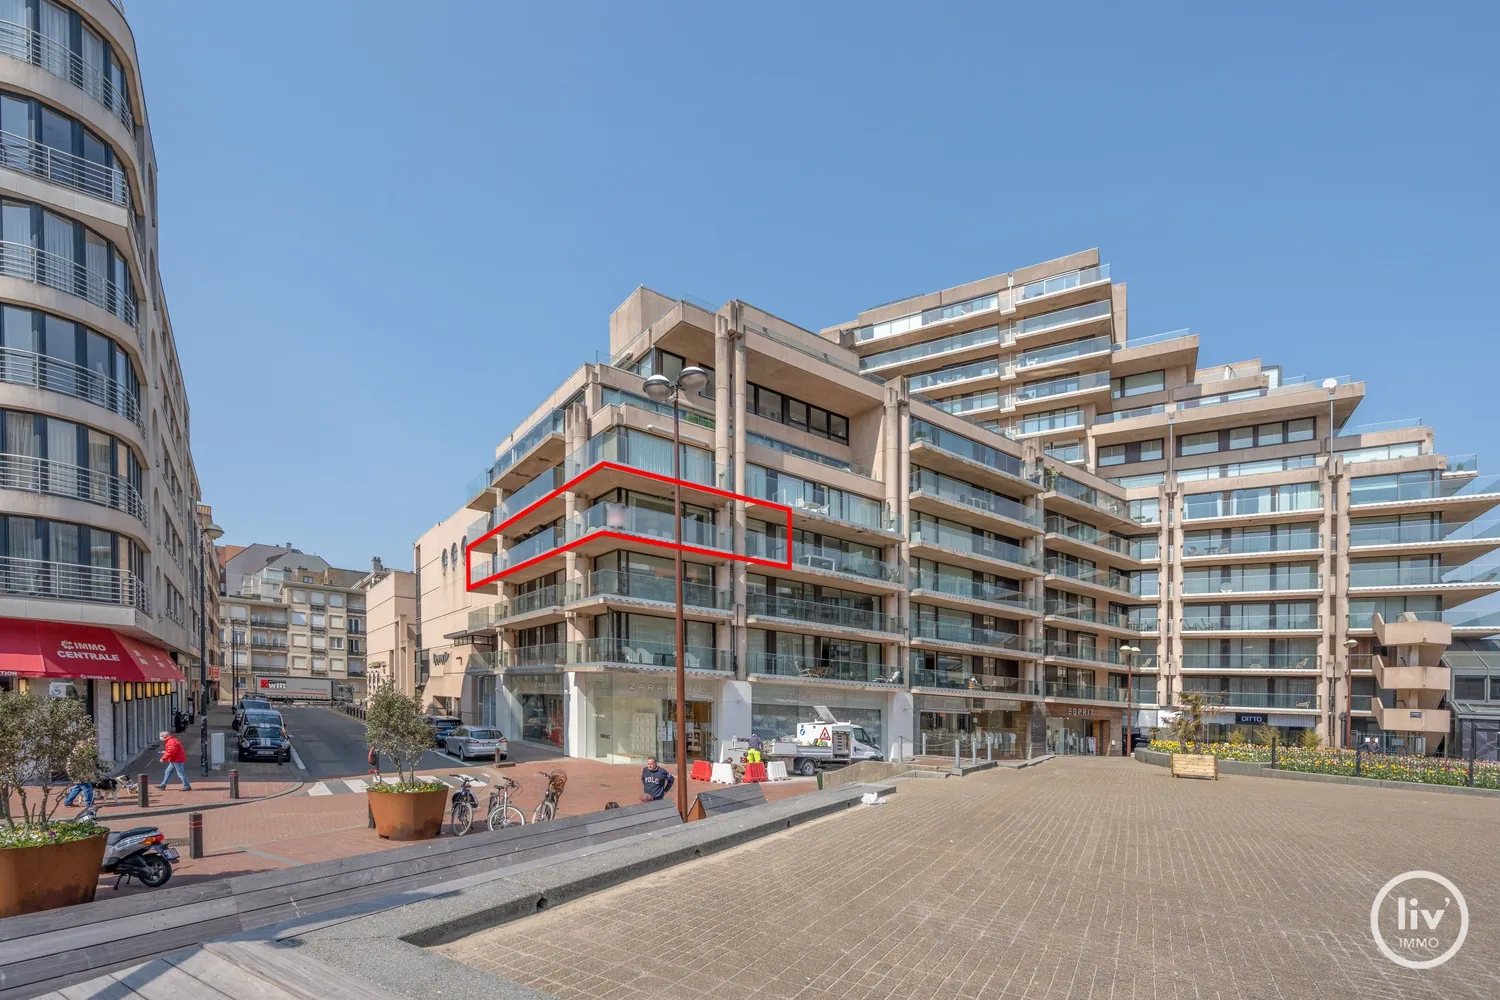 À vendre, appartement d'angle ensoleillé d'environ 120 m² avec large terrasses, centralement situé sur la place Van Bunnen, à quelques pas de la plage et des magasins. 